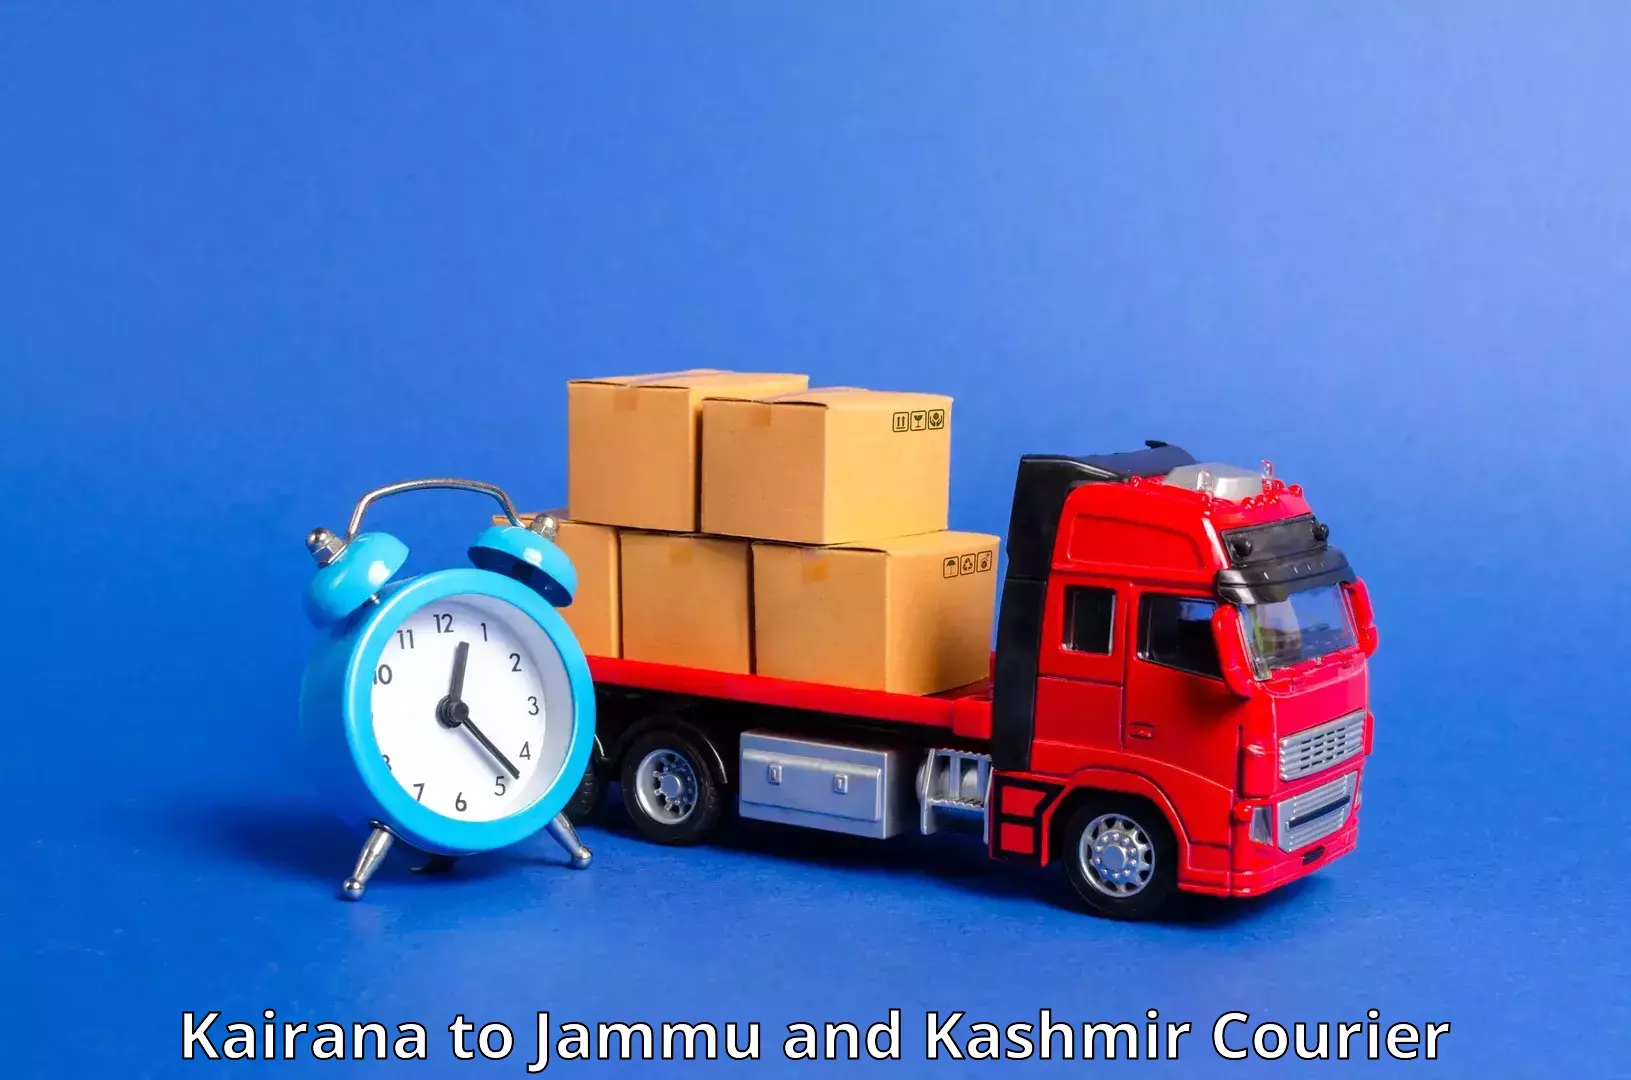 Next-day delivery options Kairana to Katra